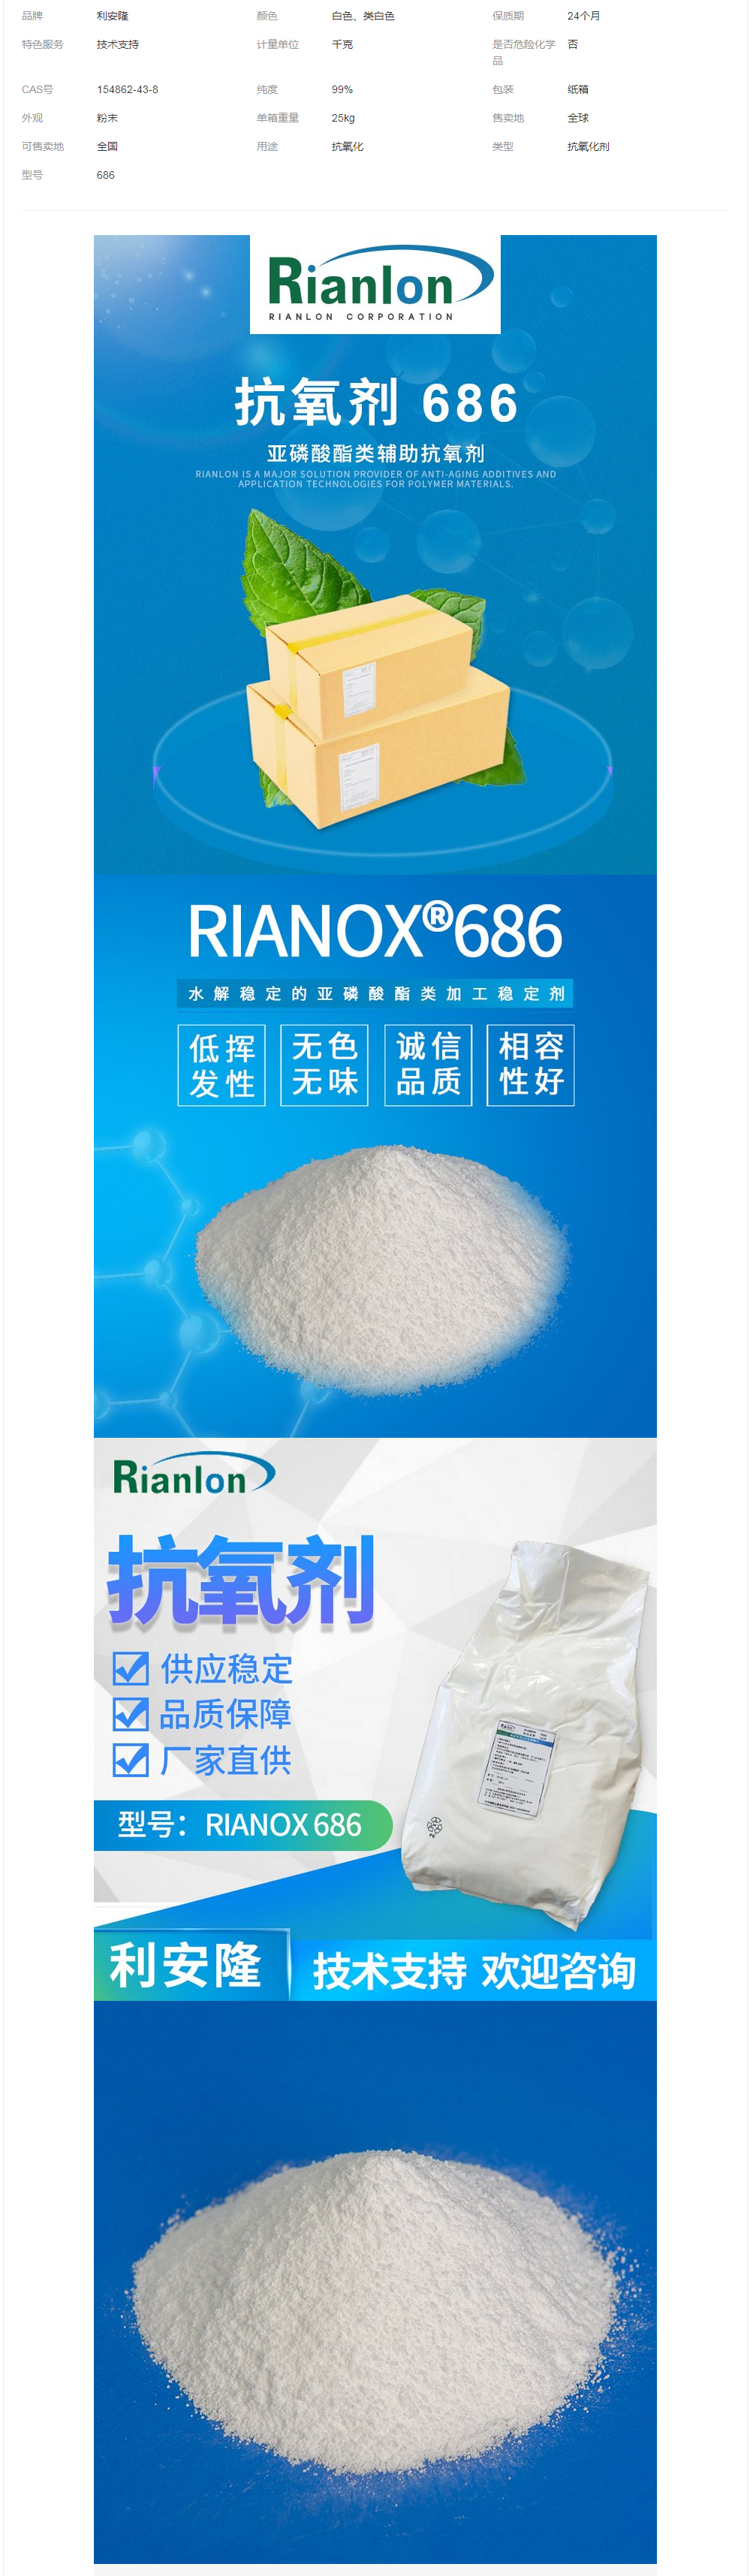 Rianlon利安隆抗氧剂686塑料稳定剂添加剂亚磷酸酯类抗氧化剂.png